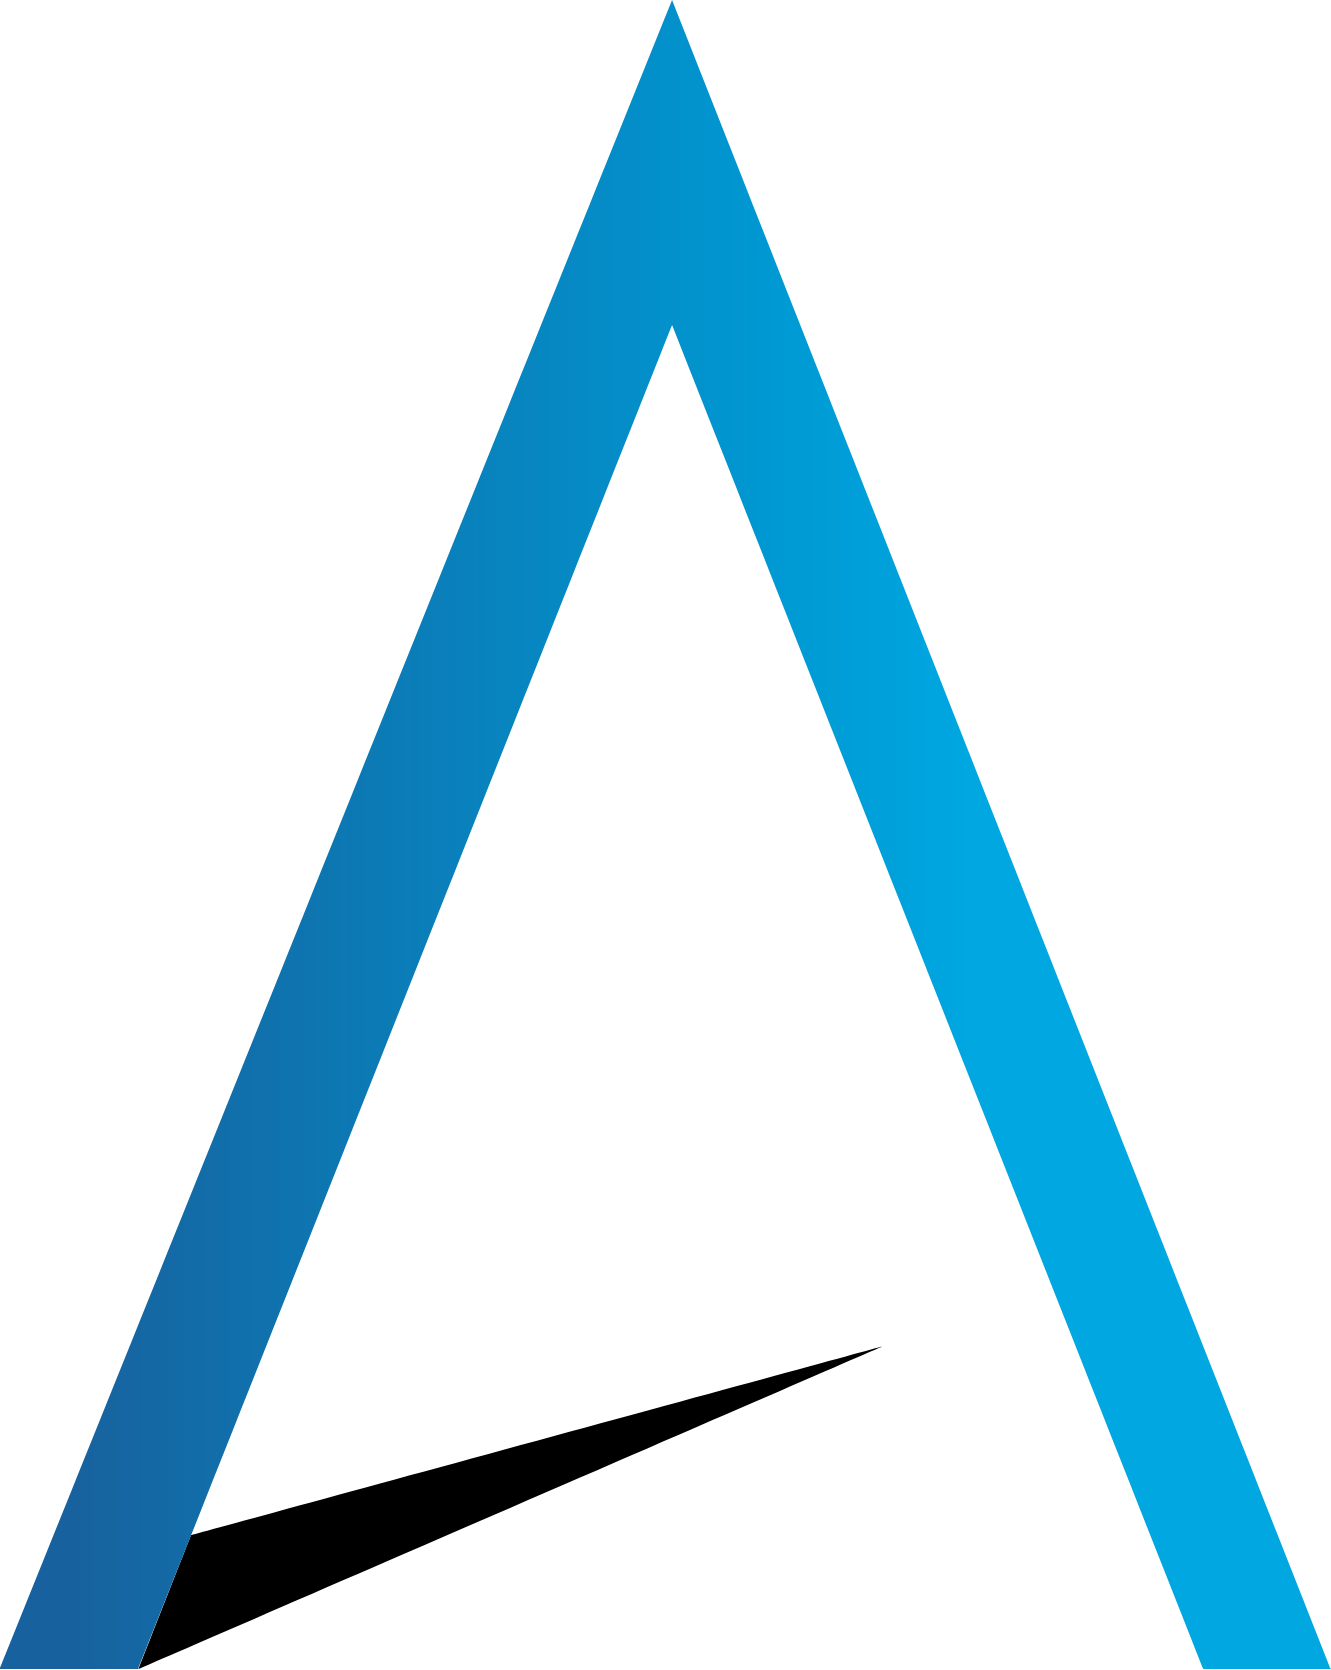 Ventas logo (PNG transparent)